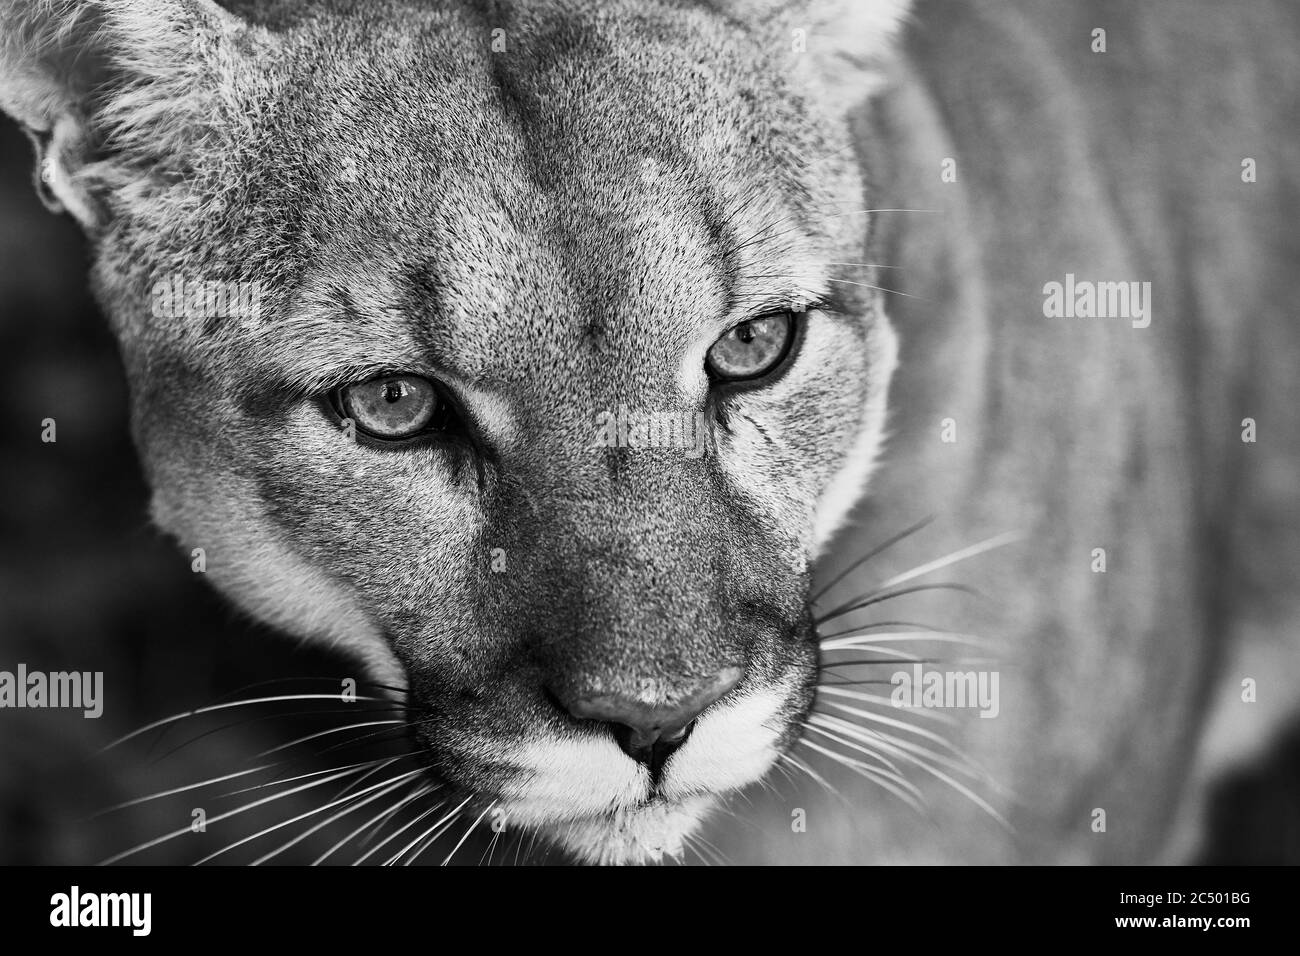 Portrait de la belle Puma. Cougar, lion de montagne, puma, panthère, pose frappante, scène dans les bois, faune Amérique. Banque D'Images